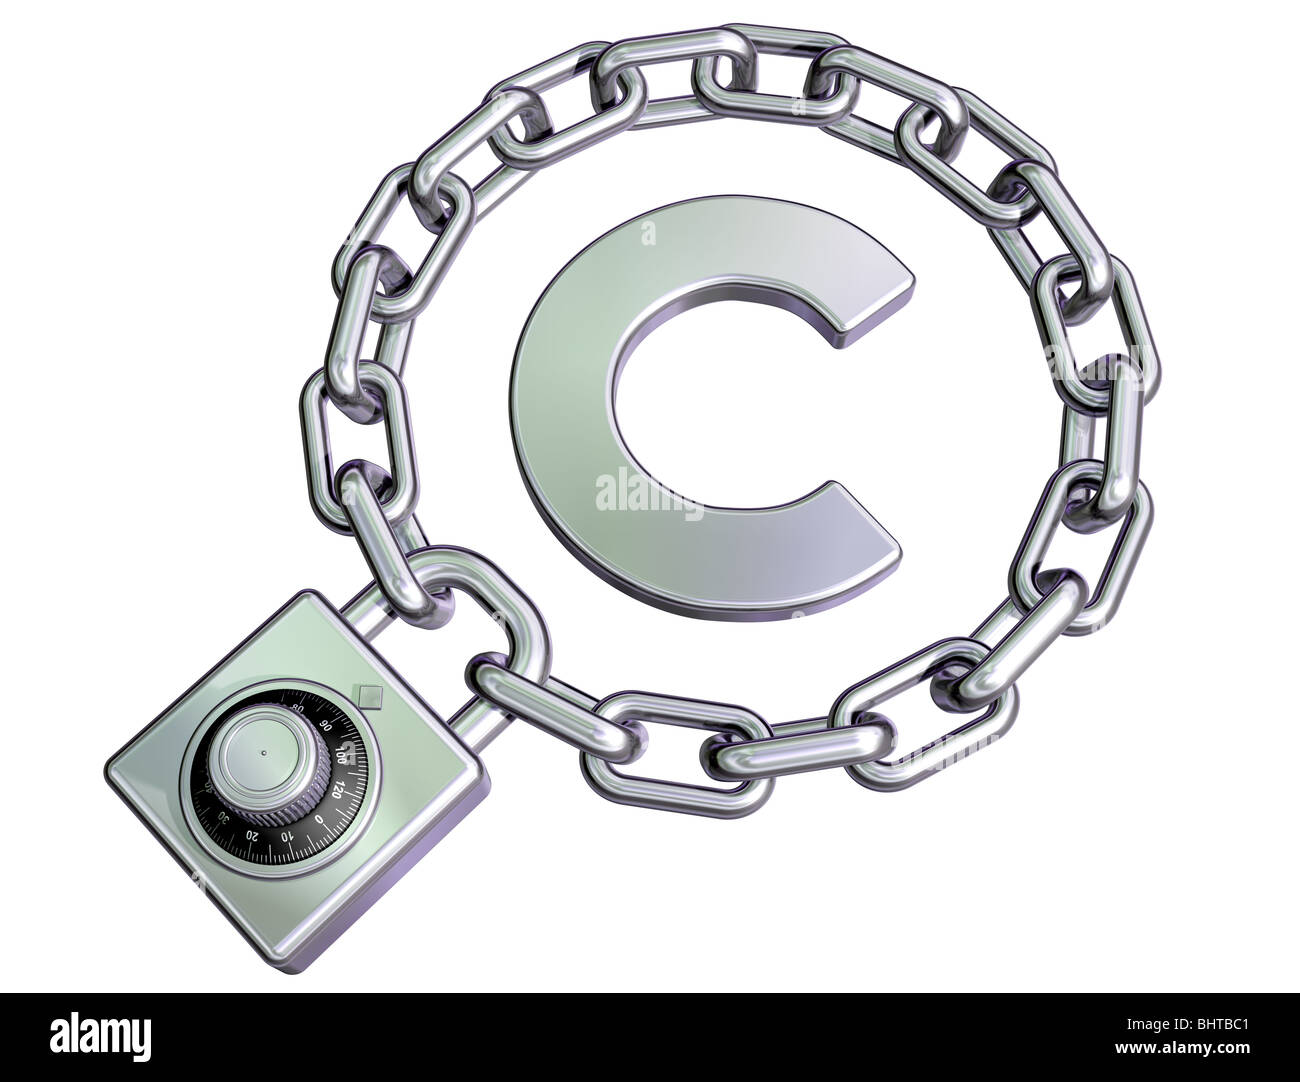 Ilustración aislada de un símbolo de copyright protegido Foto de stock